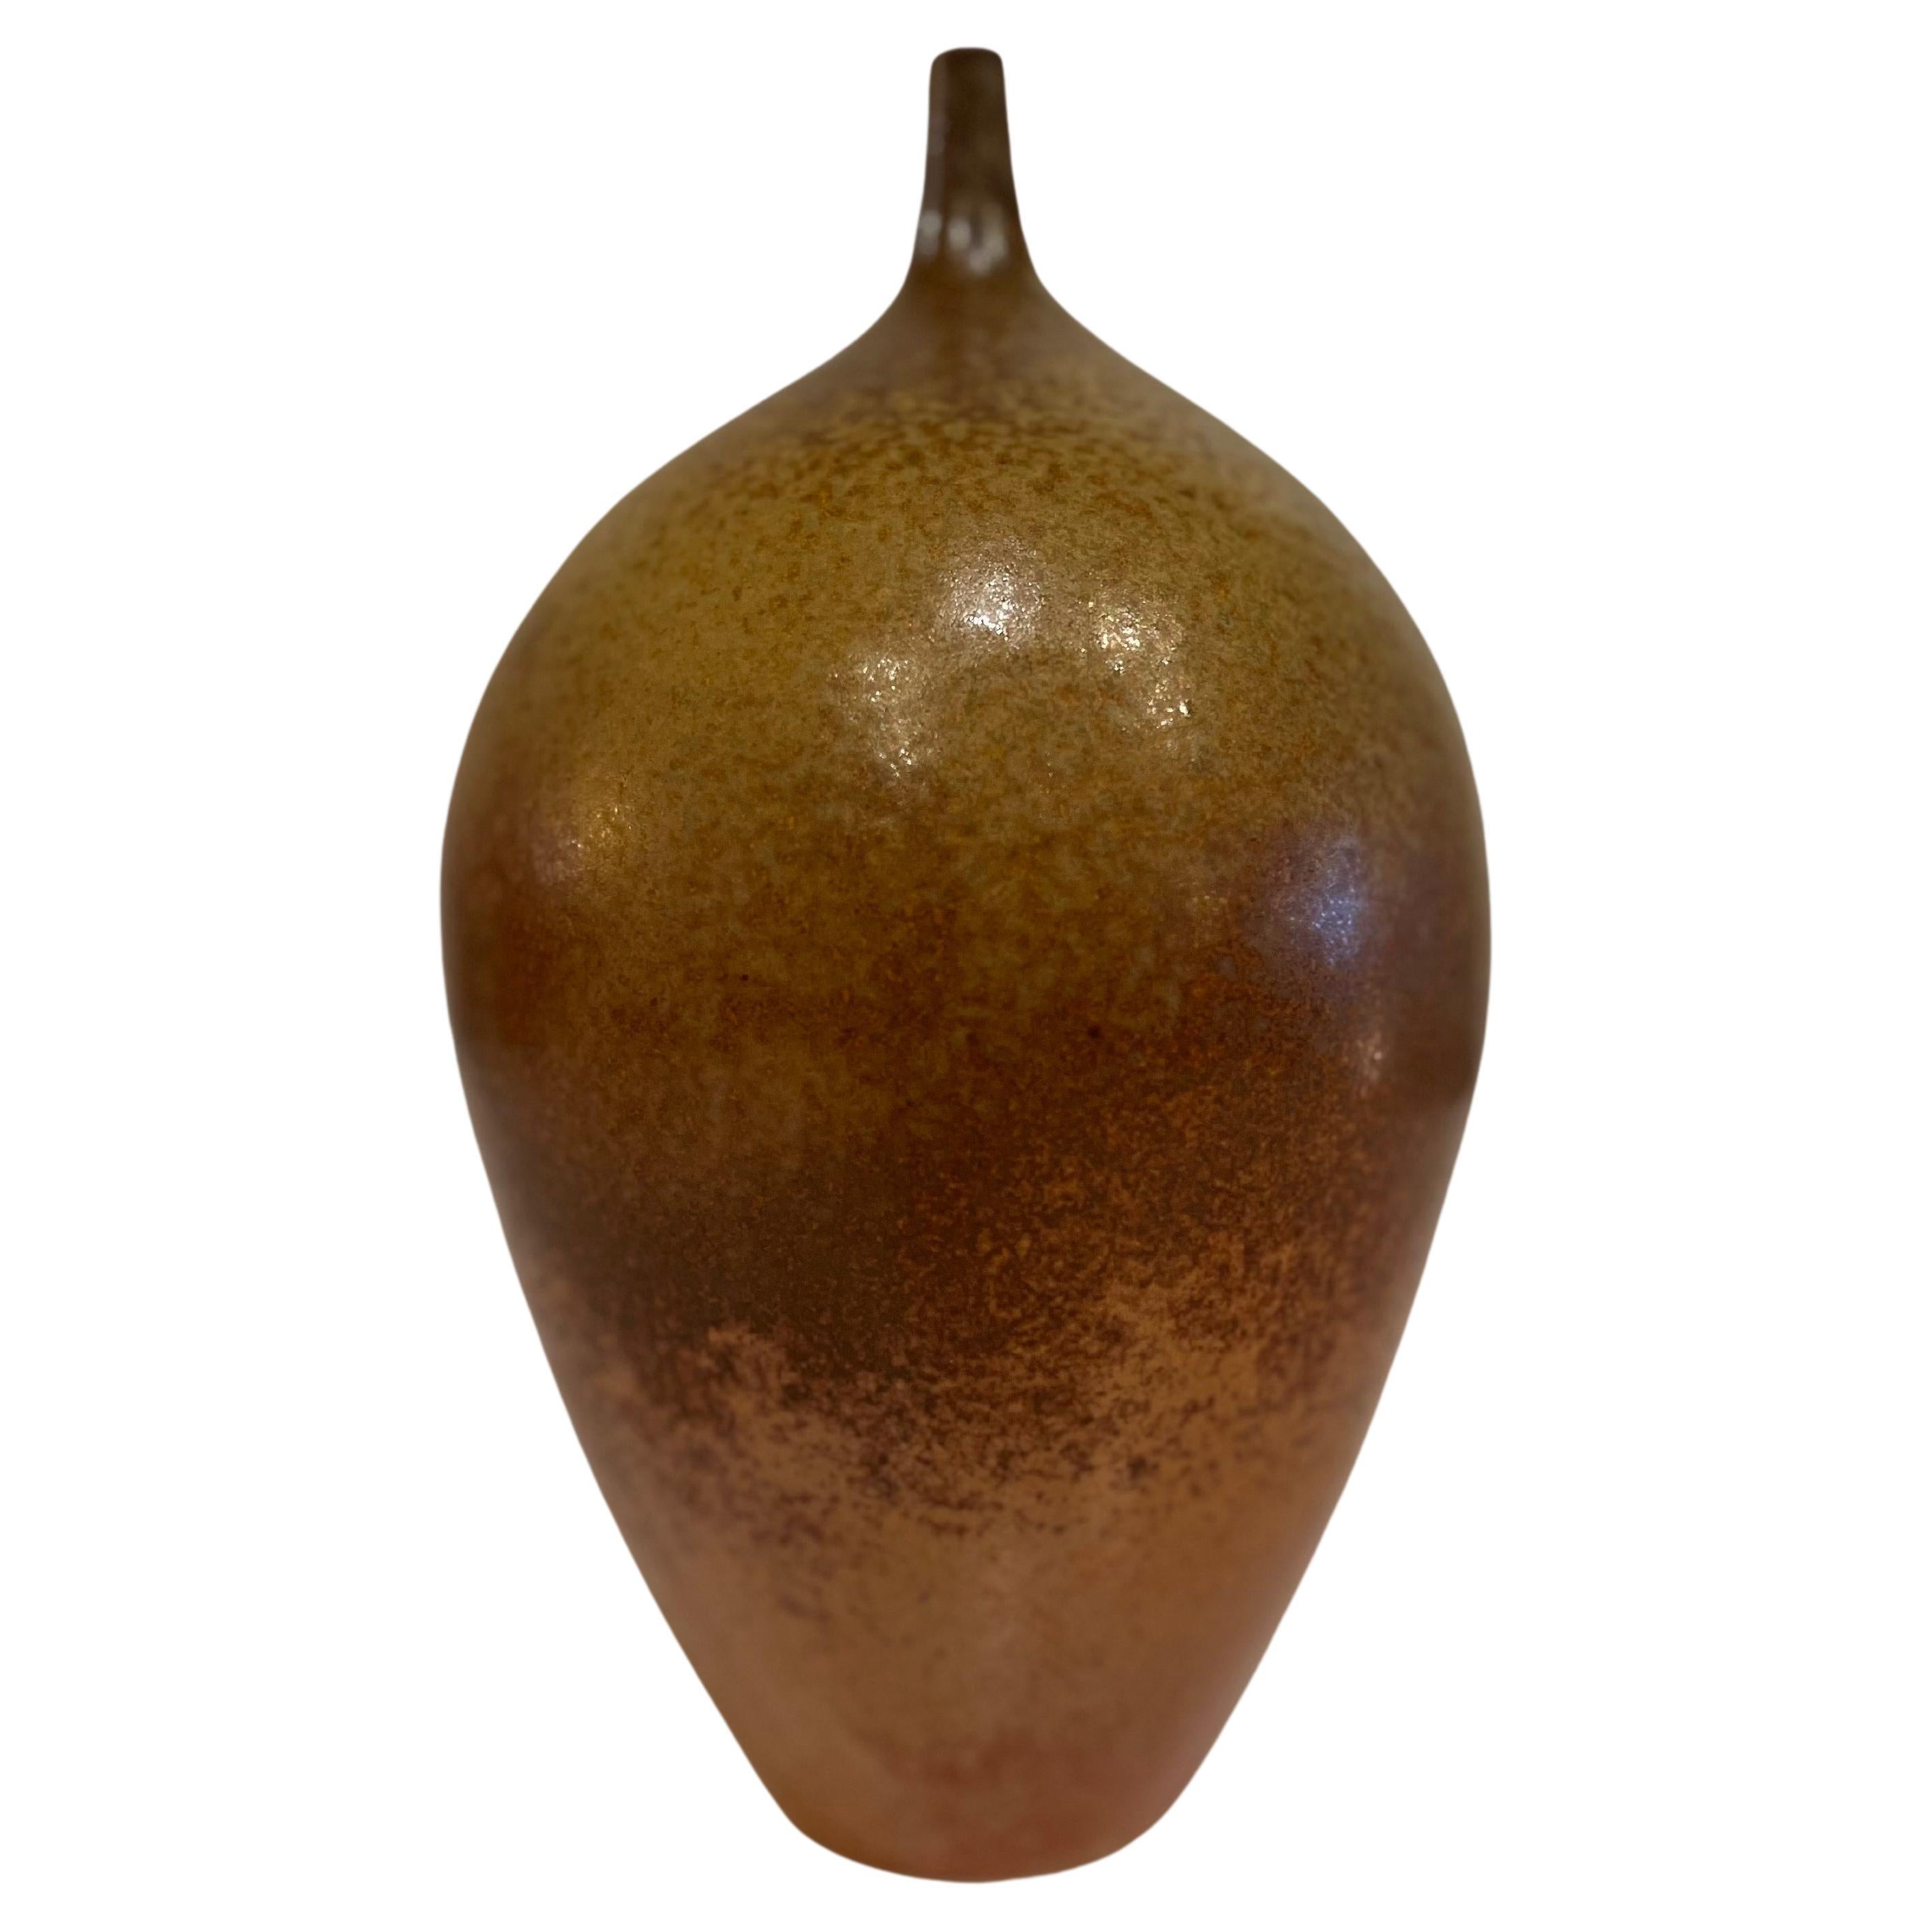 Magnifique glaçure sur cet élégant vase en céramique, nous n'arrivons pas à identifier l'artiste. Pièce bien faite en excellent état vers les années 1960.